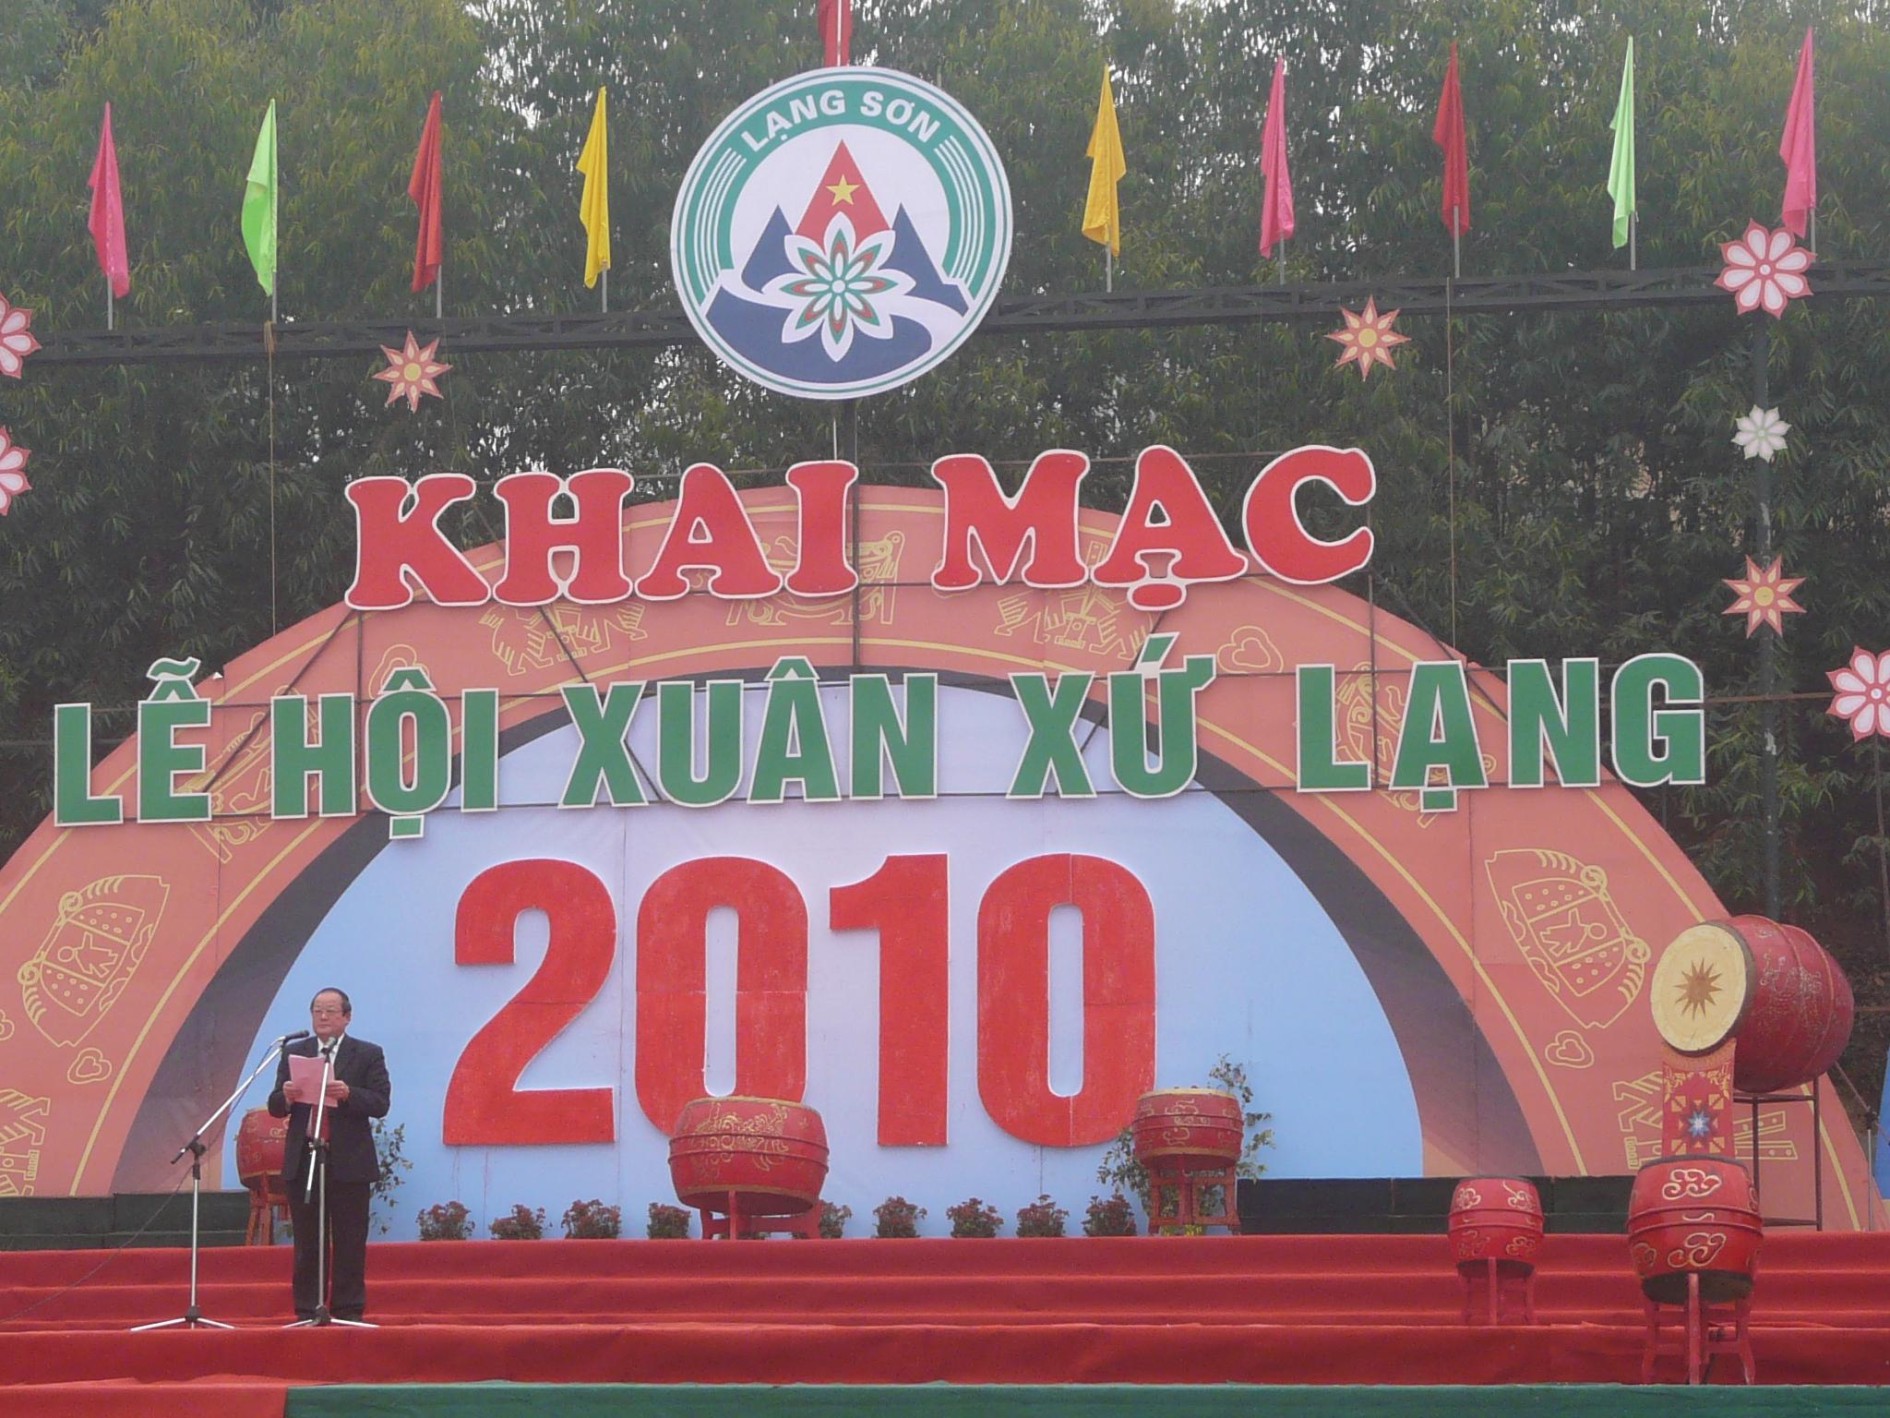 Lễ hội Xuân 2010 với logo Lạng Sơn